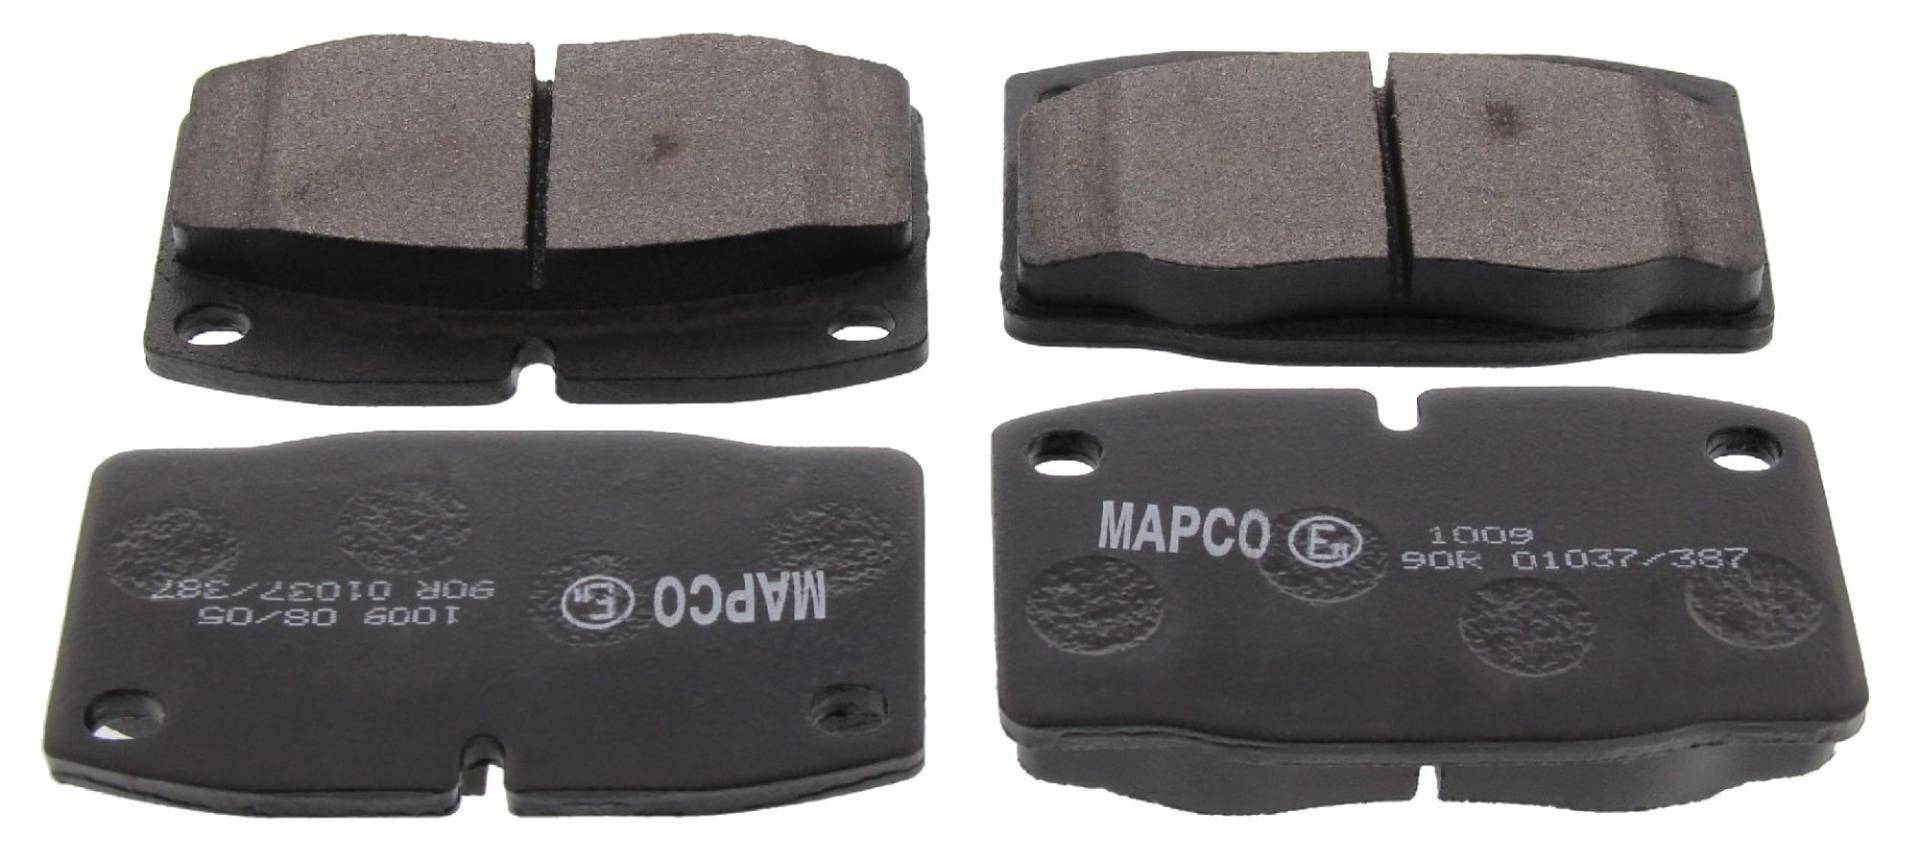 MAPCO 6145/2 Bremsbeläge, 4 Stück von Mapco